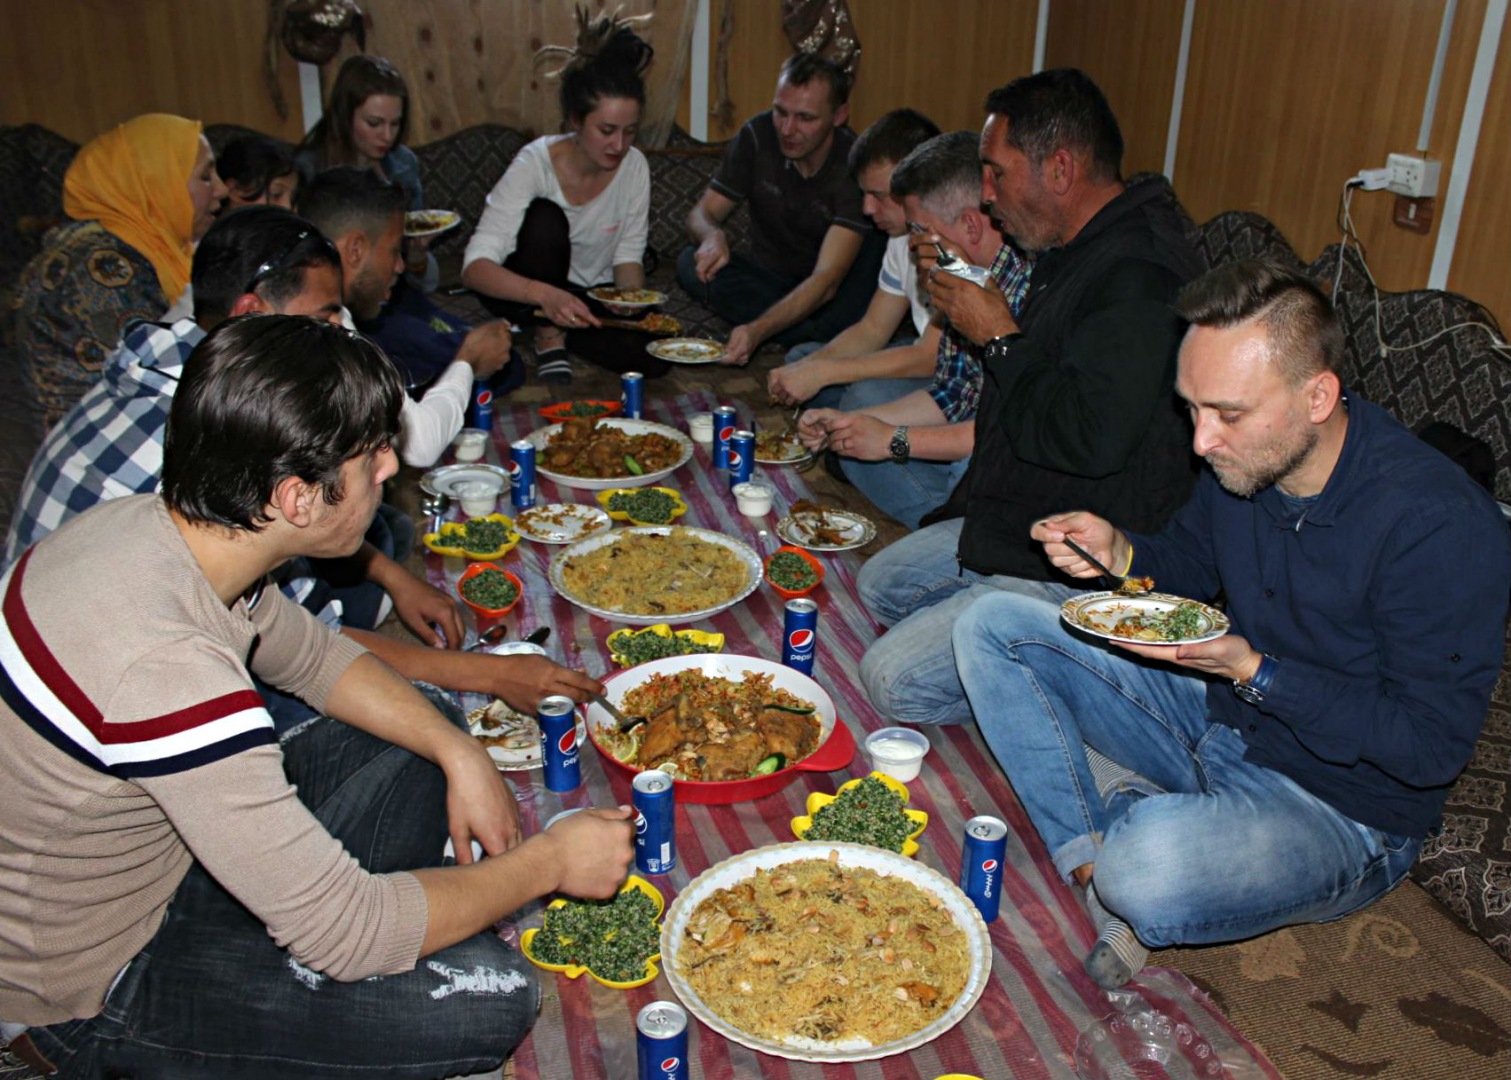 Zaatari (jeden z największych obozów dla uchodźców na świecie), Jordania. Trwa obiad. Dr Kamil Minkner (pierwszy z prawej) jest członkiem ekipy studyjnej z Instytutu Politologii UO, która przygotowuje specjalne zajęcia o tematyce międzynarodowej